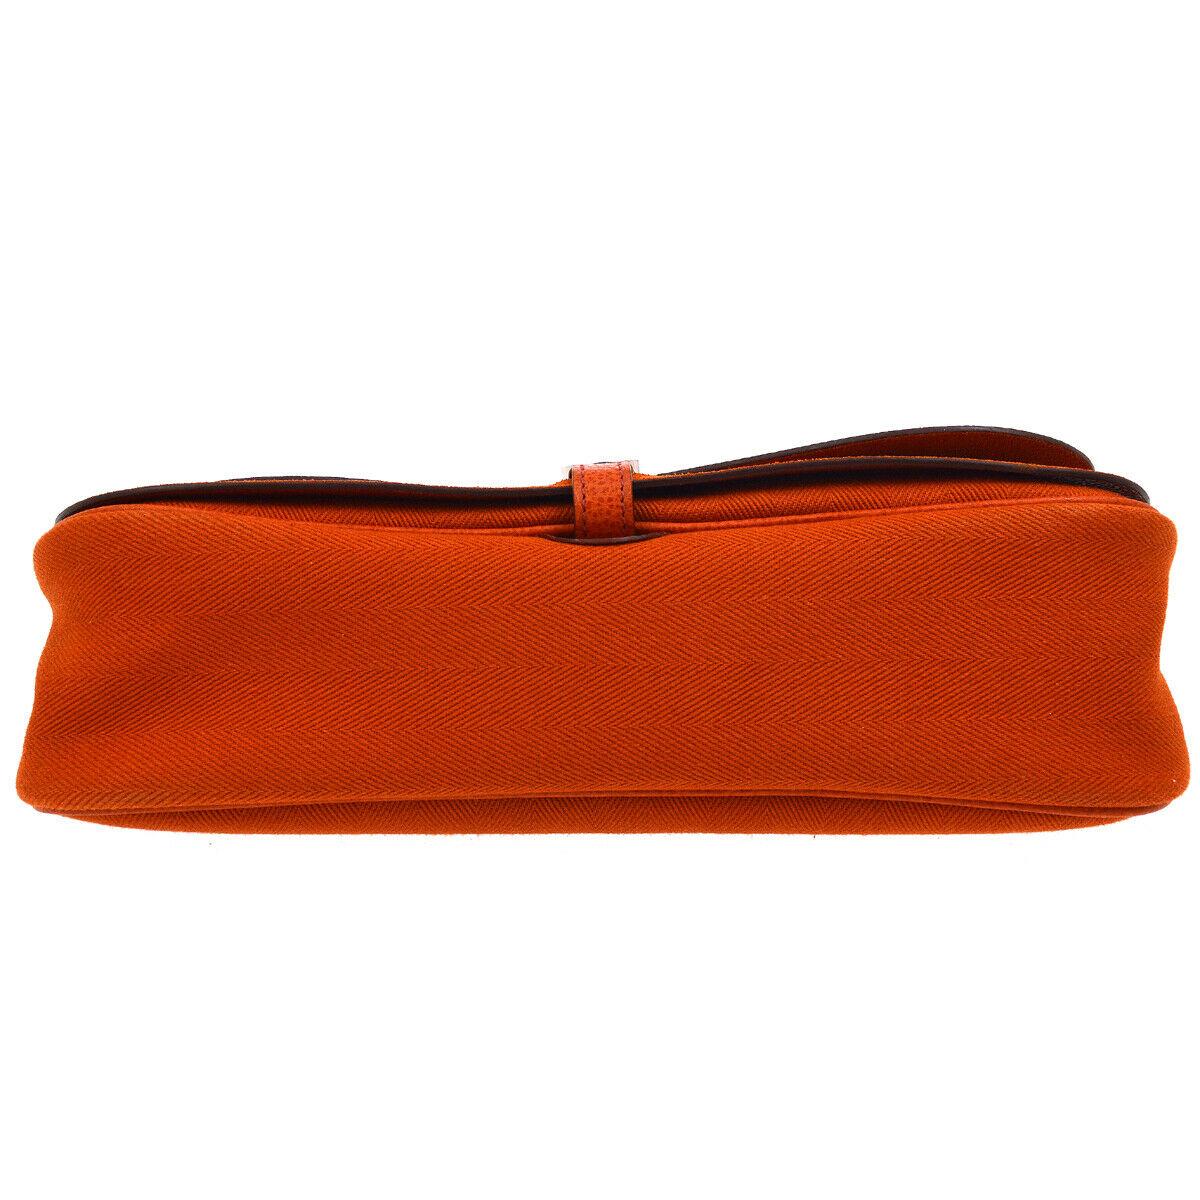 Red Hermes Orange Canvas Leather Evening Top Handle Satchel Shoulder Flap Bag